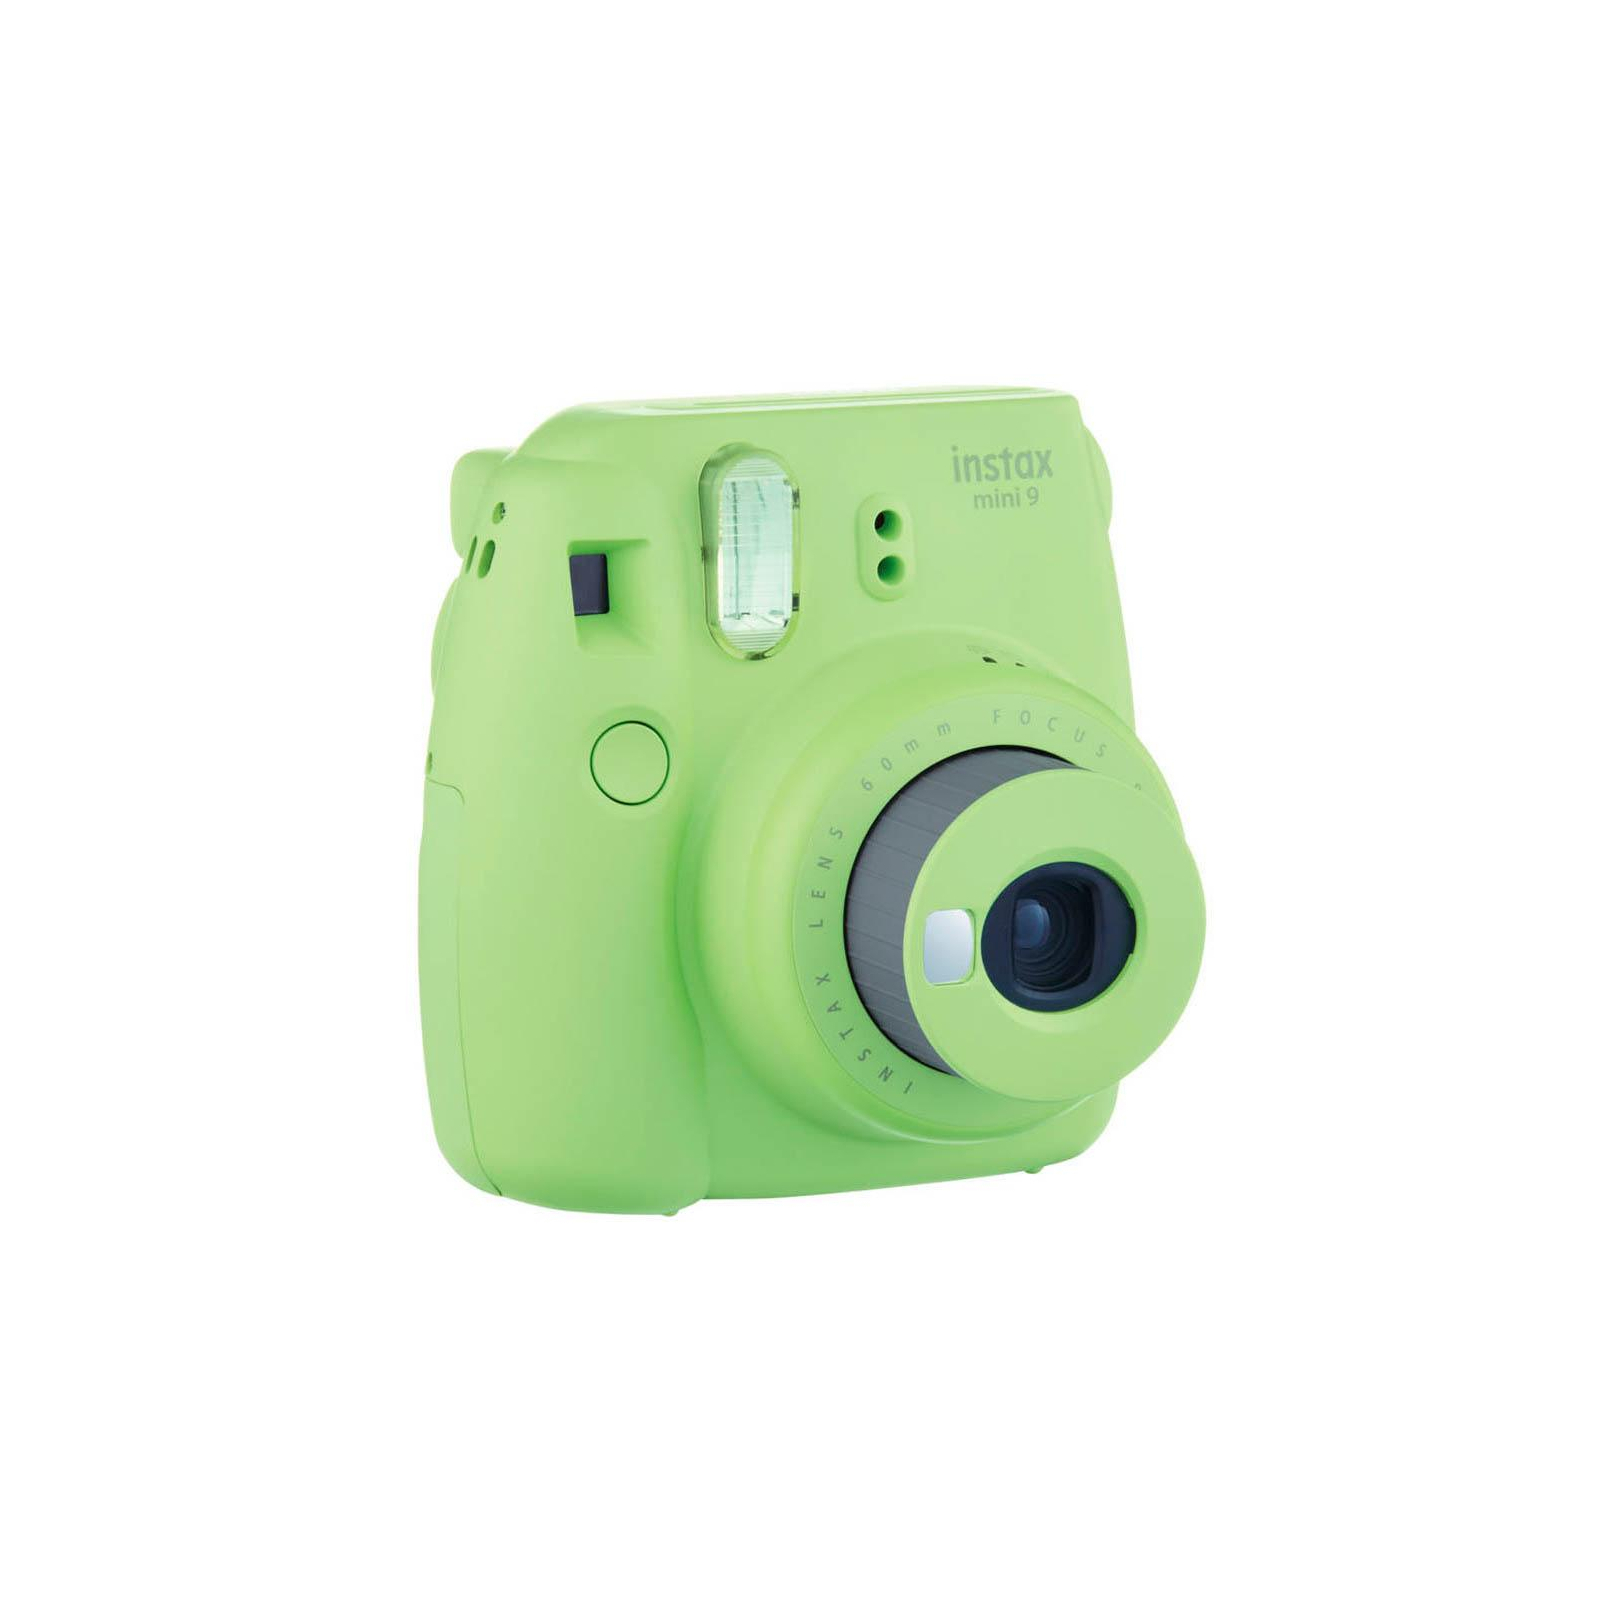 Камера моментальной печати Fujifilm Instax Mini 9 CAMERA LIM GREEN TH EX D (16550708) изображение 3